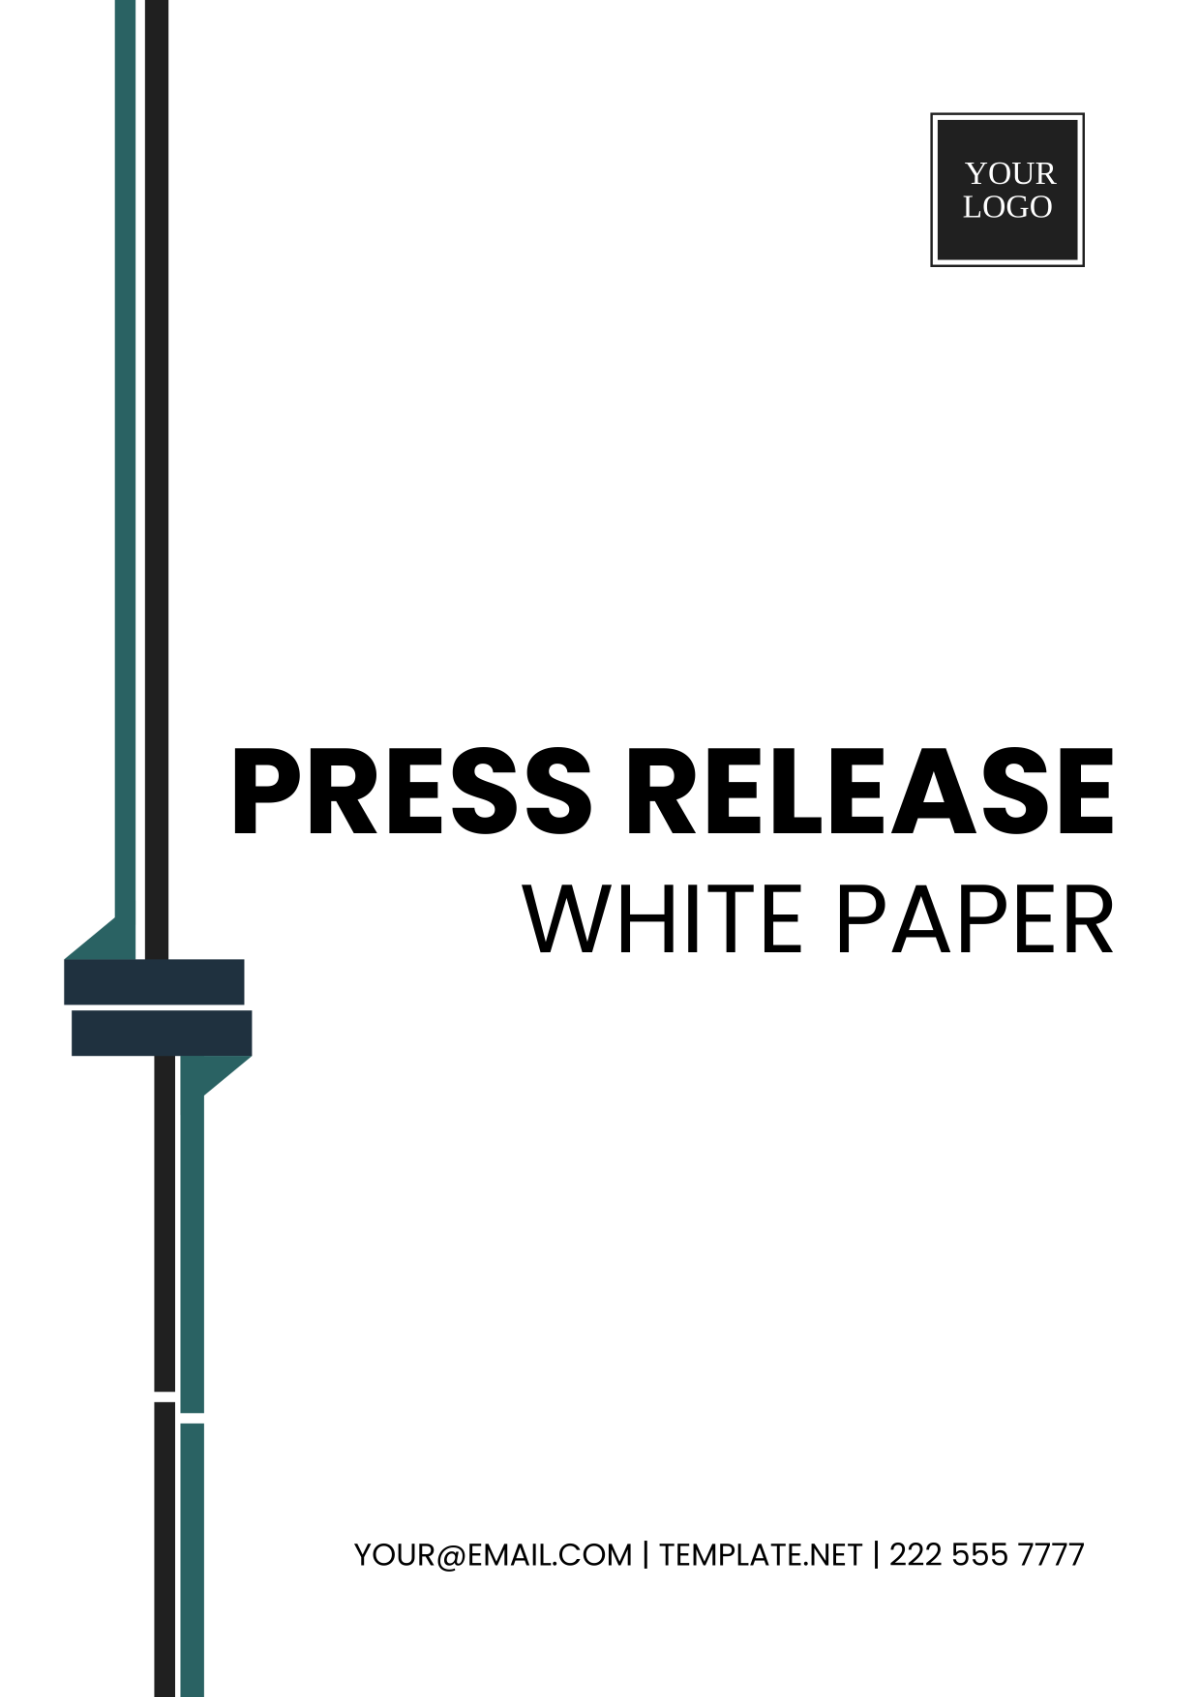 Press Release White Paper Template